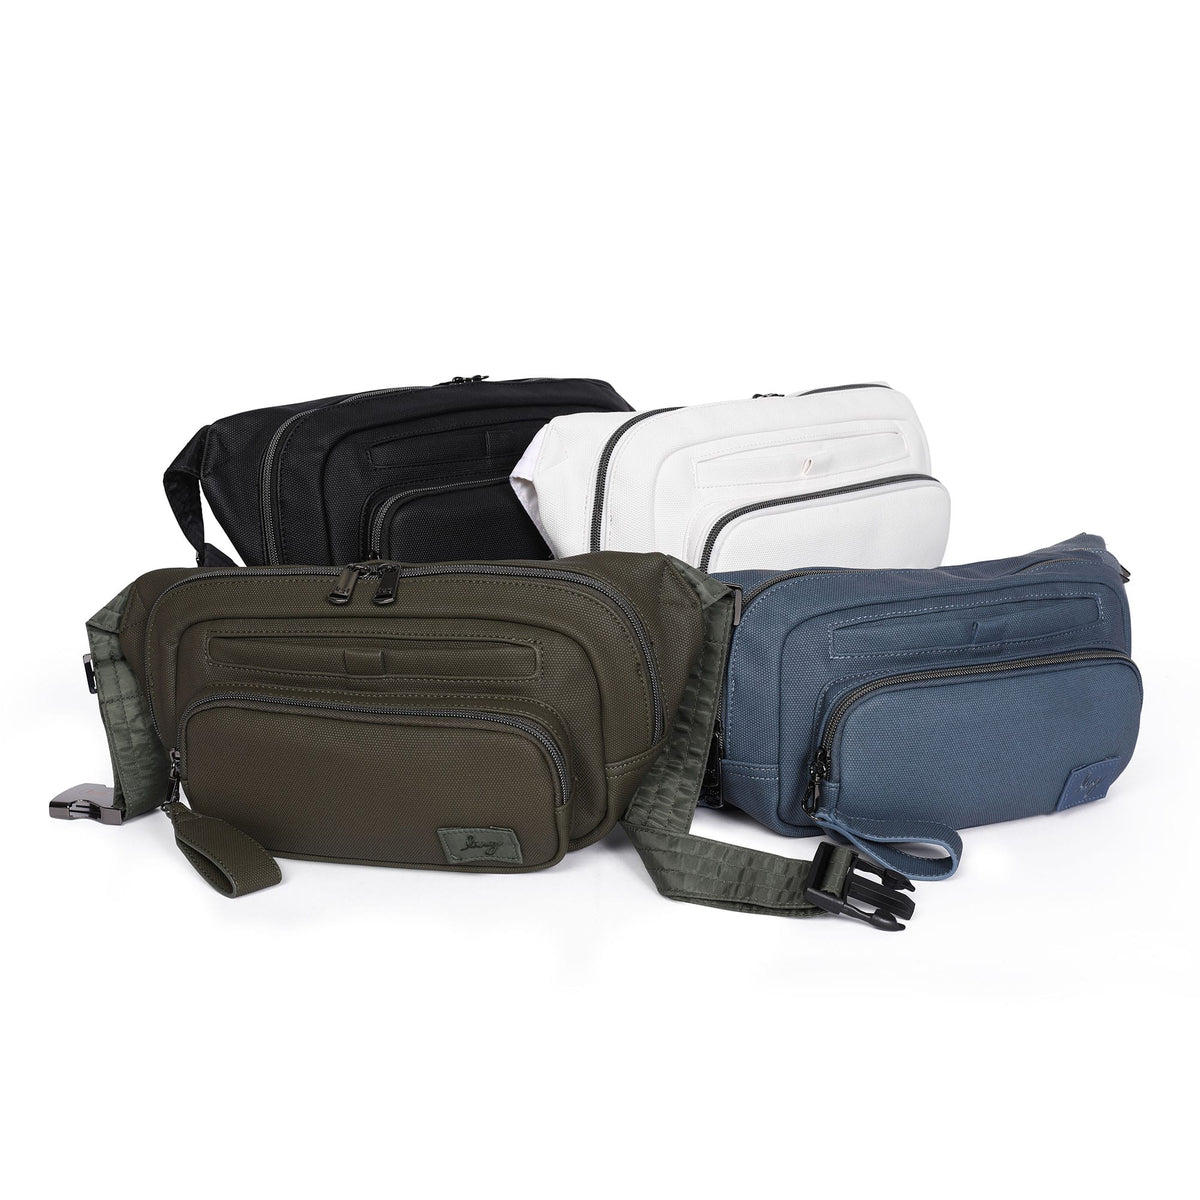 Luxe Convertible Sling/Belt Bag